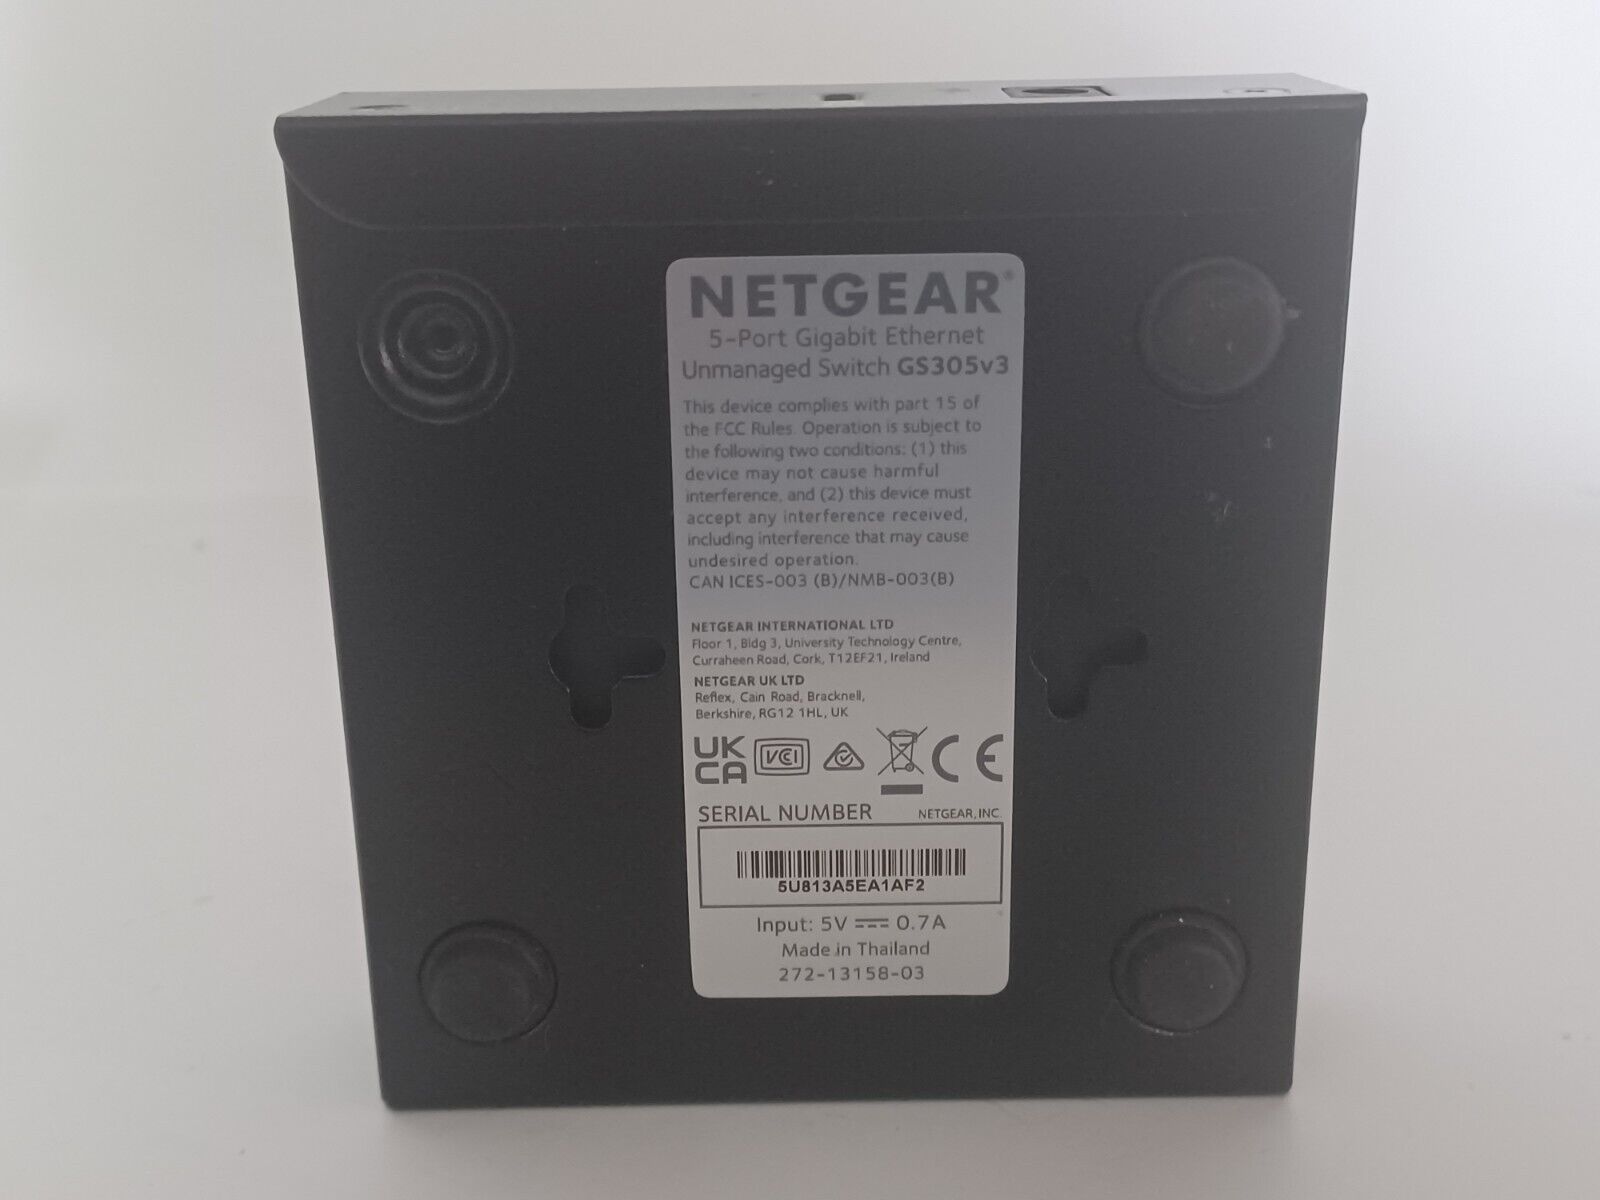 NETGEAR GS305v3 5-Port Gigabit Ethernet Unmanaged Switch - No Plug